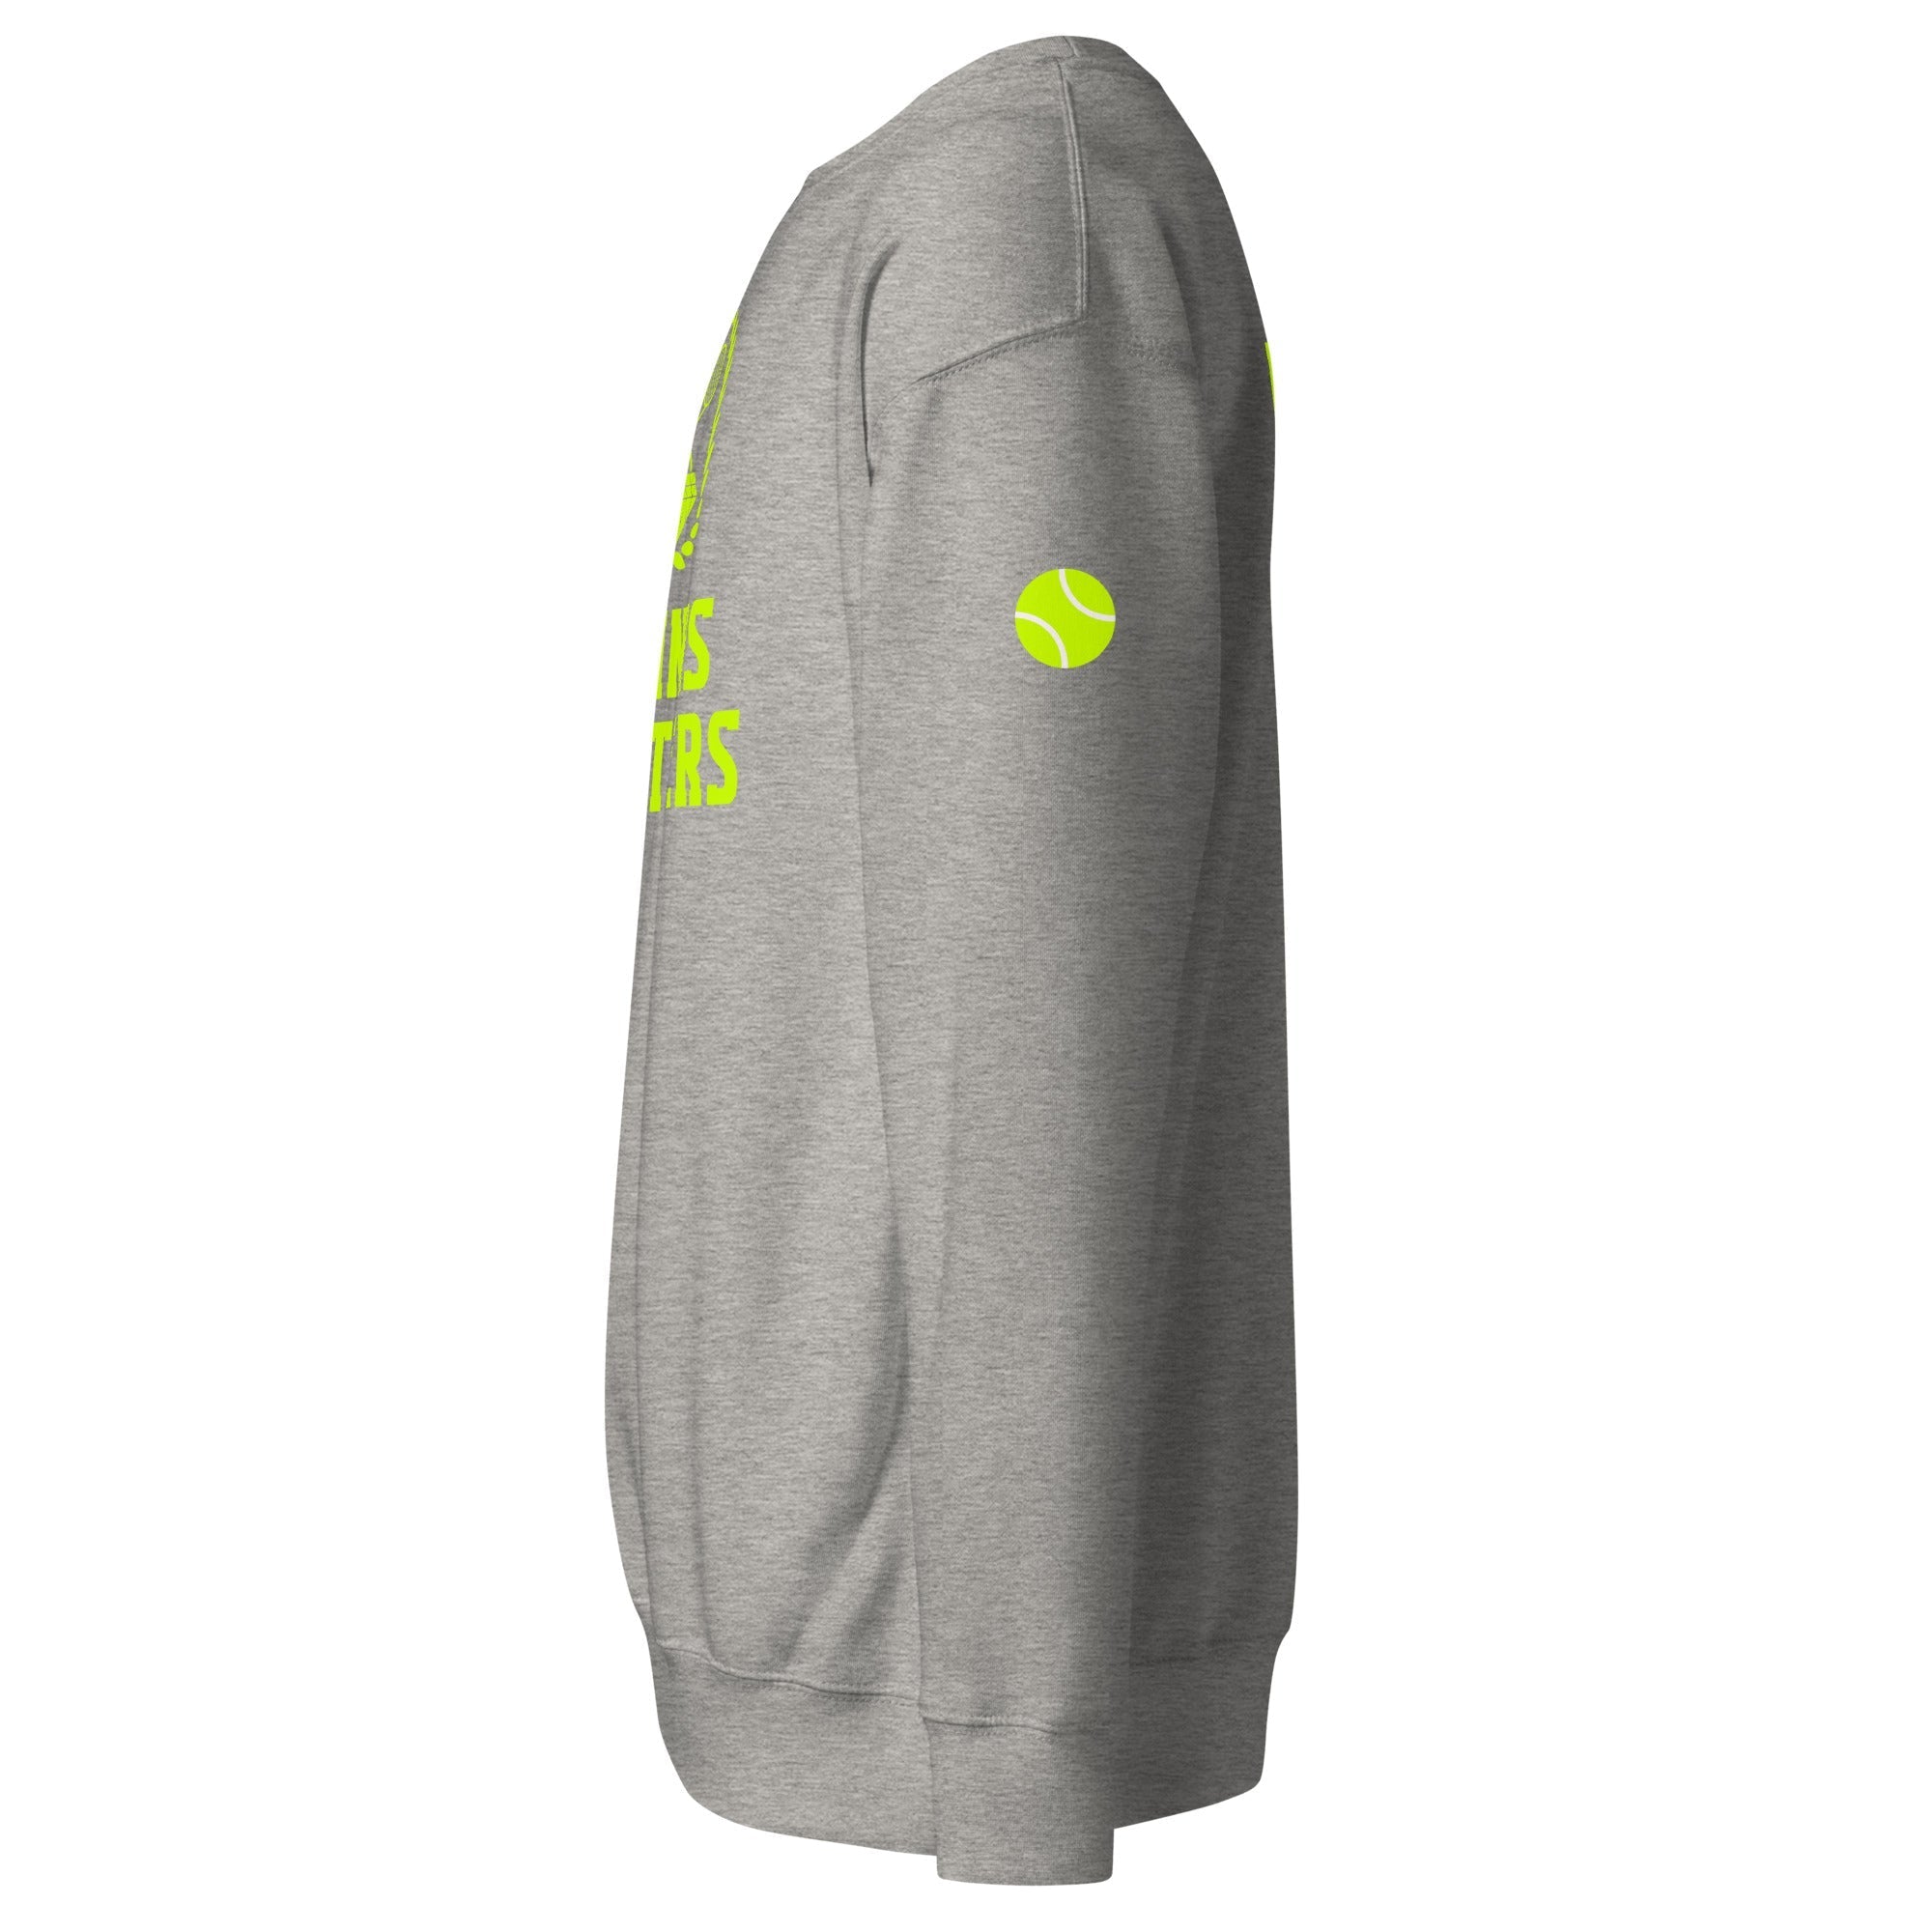 Unisex Premium Sweatshirt - Tennis Masters Doha - GRAPHIC T-SHIRTS